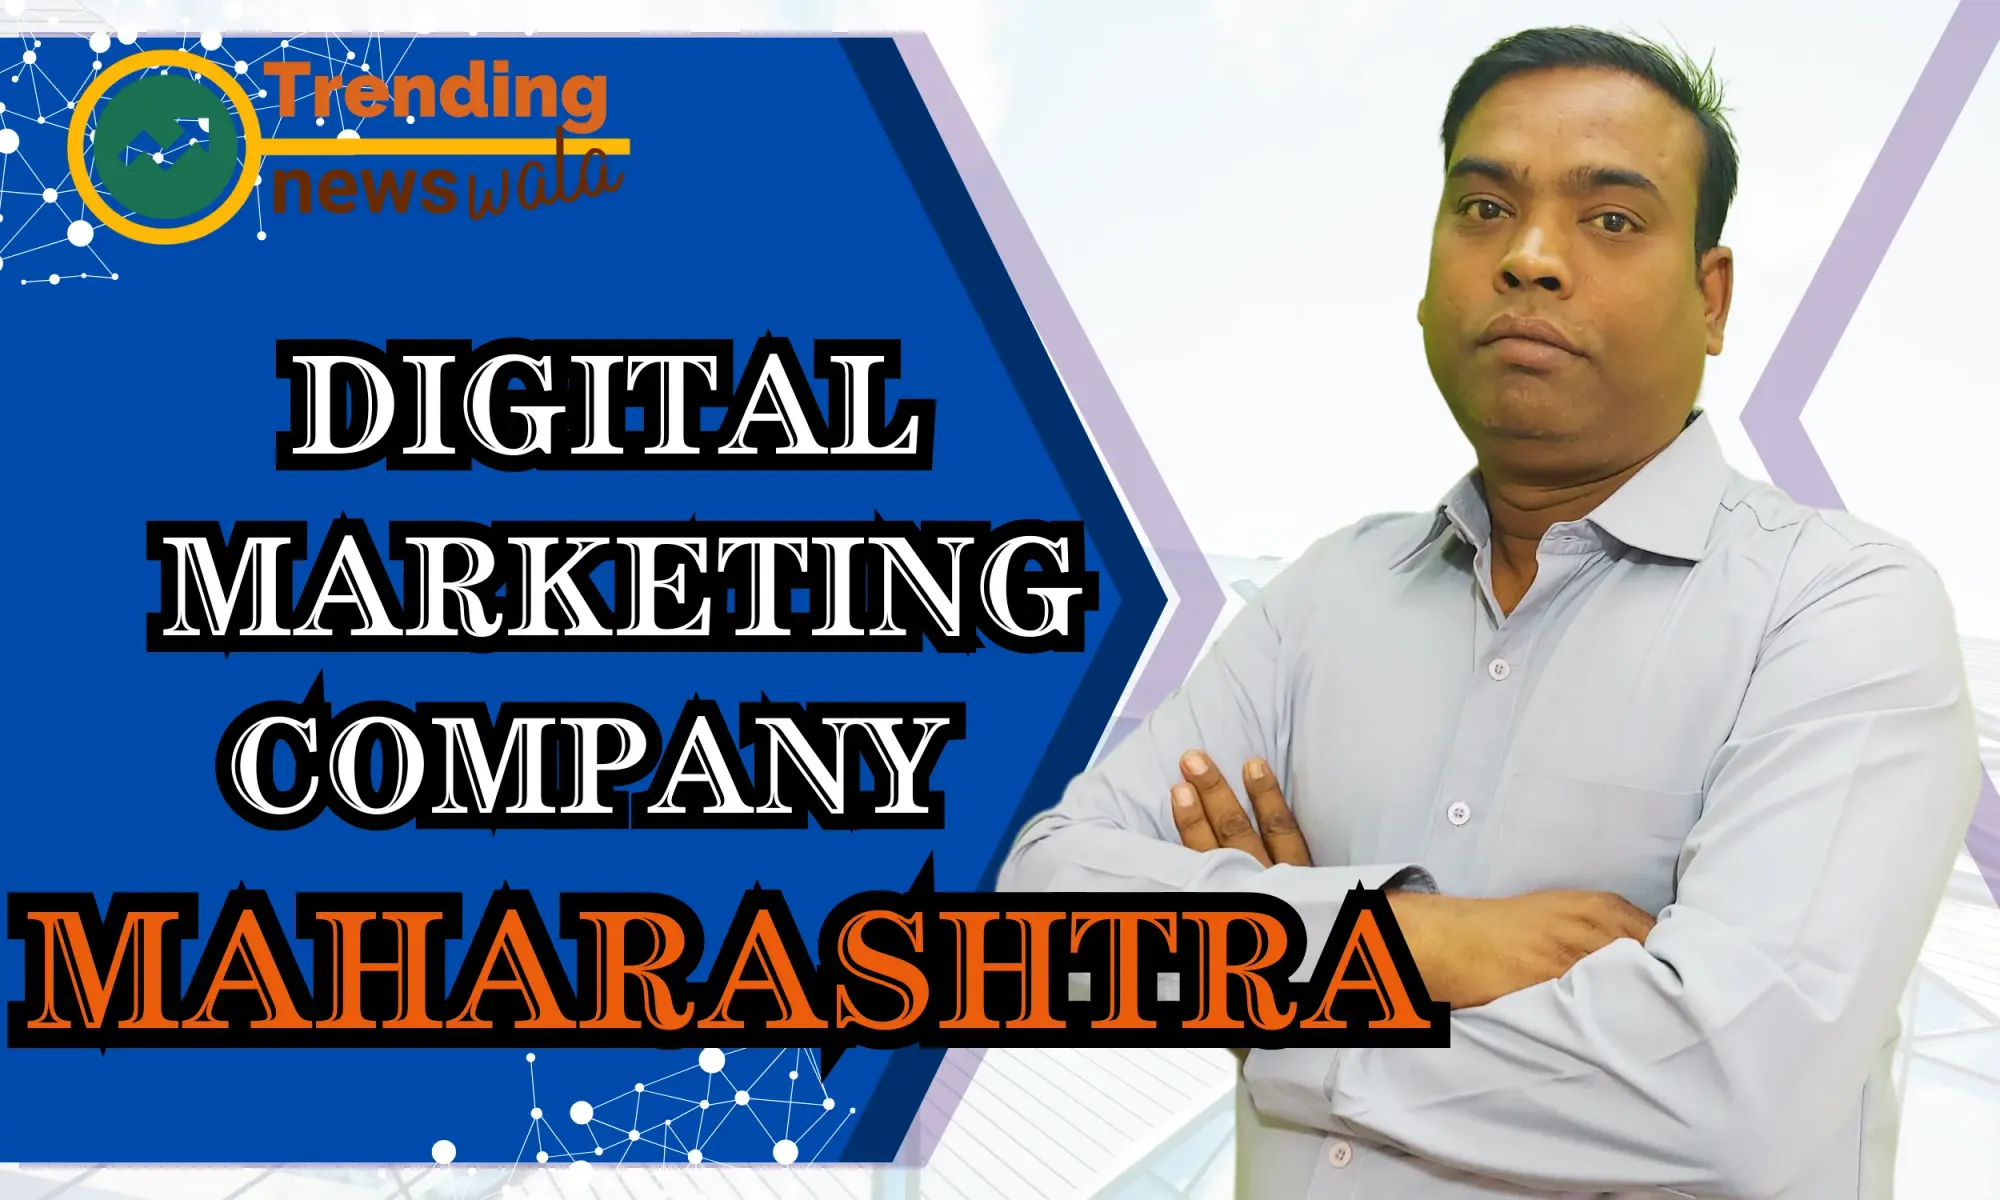 Digital Marketing in Company In Maharashtra